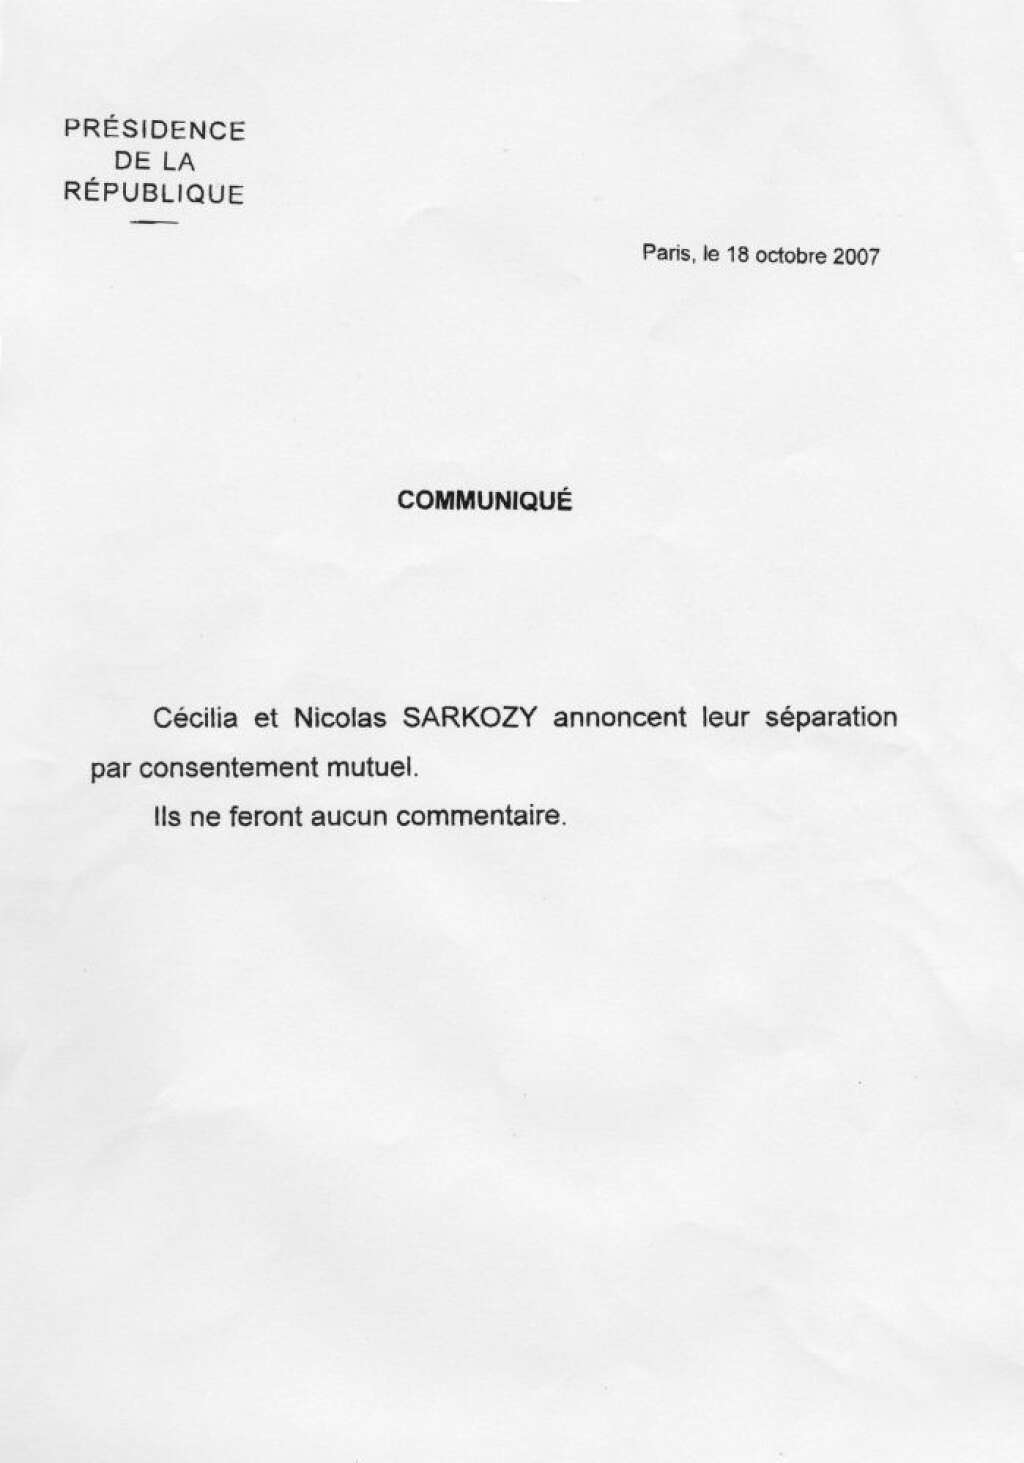 Octobre 2007: le divorce - Mettant fin aux rumeurs de disputes, Nicolas et Cécilia Sarkozy annoncent leur divorce par communiqué le 18 octobre 2007. L'ex-Première dame quitte la France pour les Etats-Unis. Pour la première fois sous la Ve République, l'hôte de l'Elysée est célibataire.